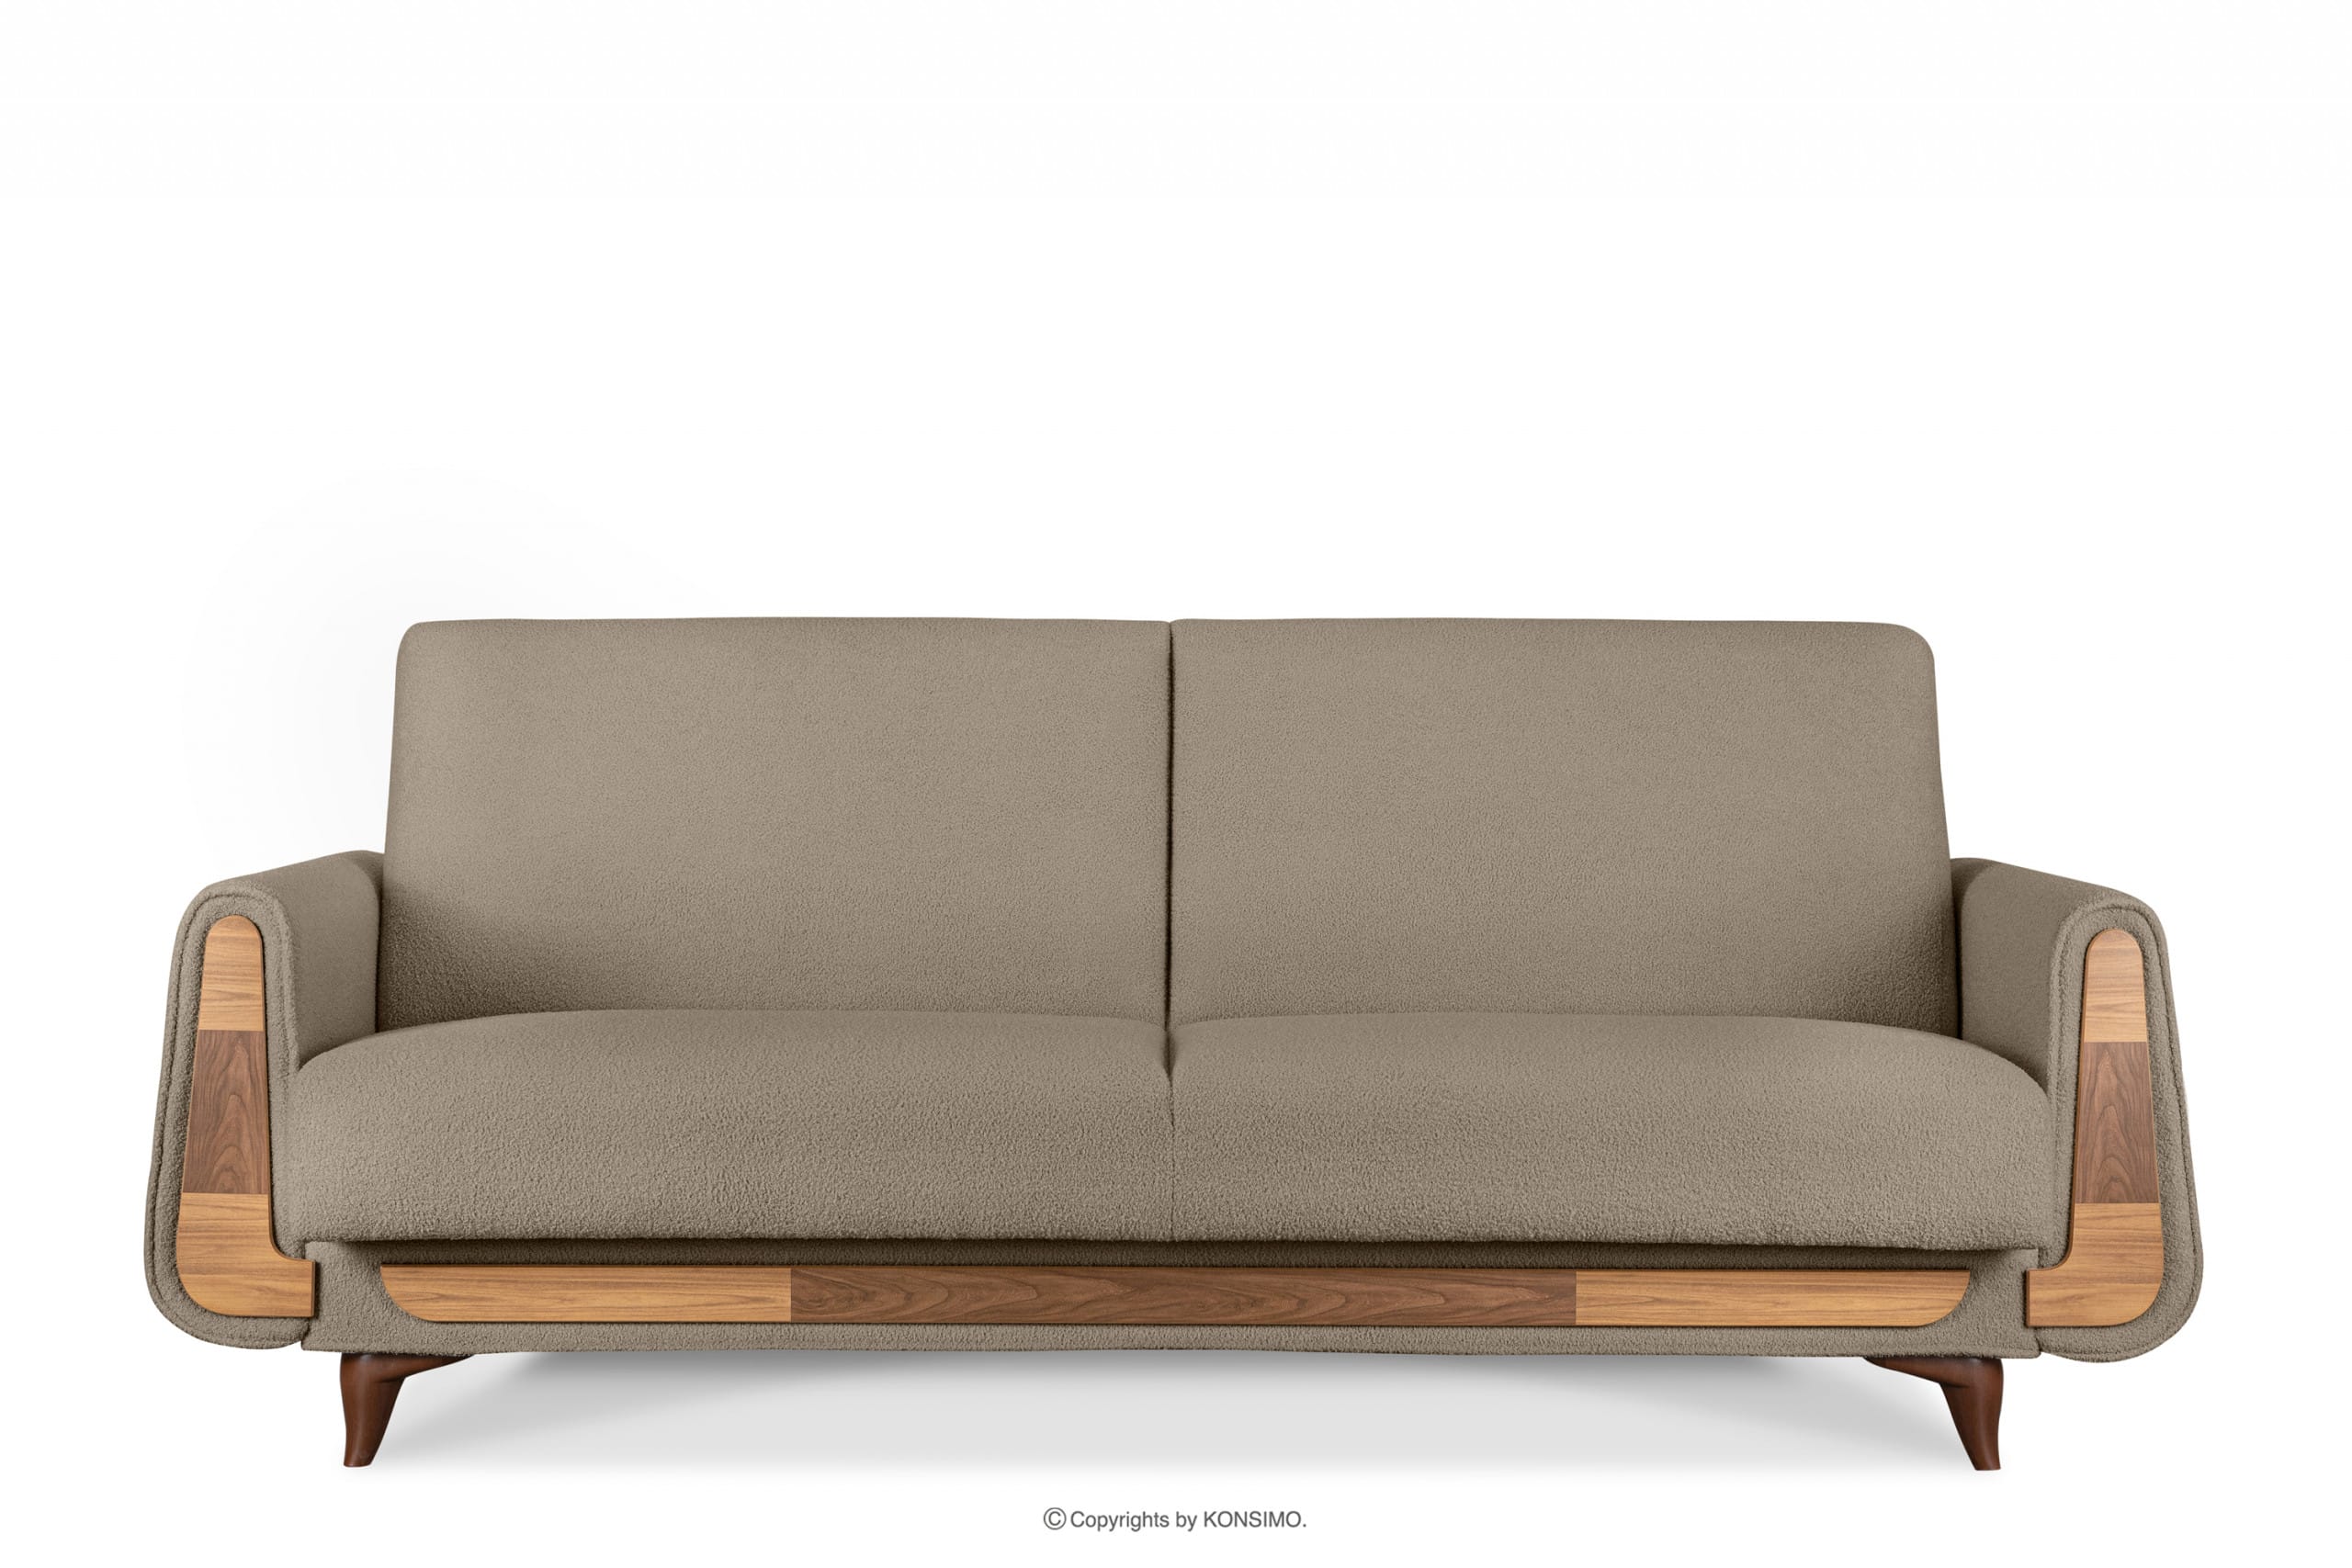 Dreisitziges Sofa aus braunem Bouclé